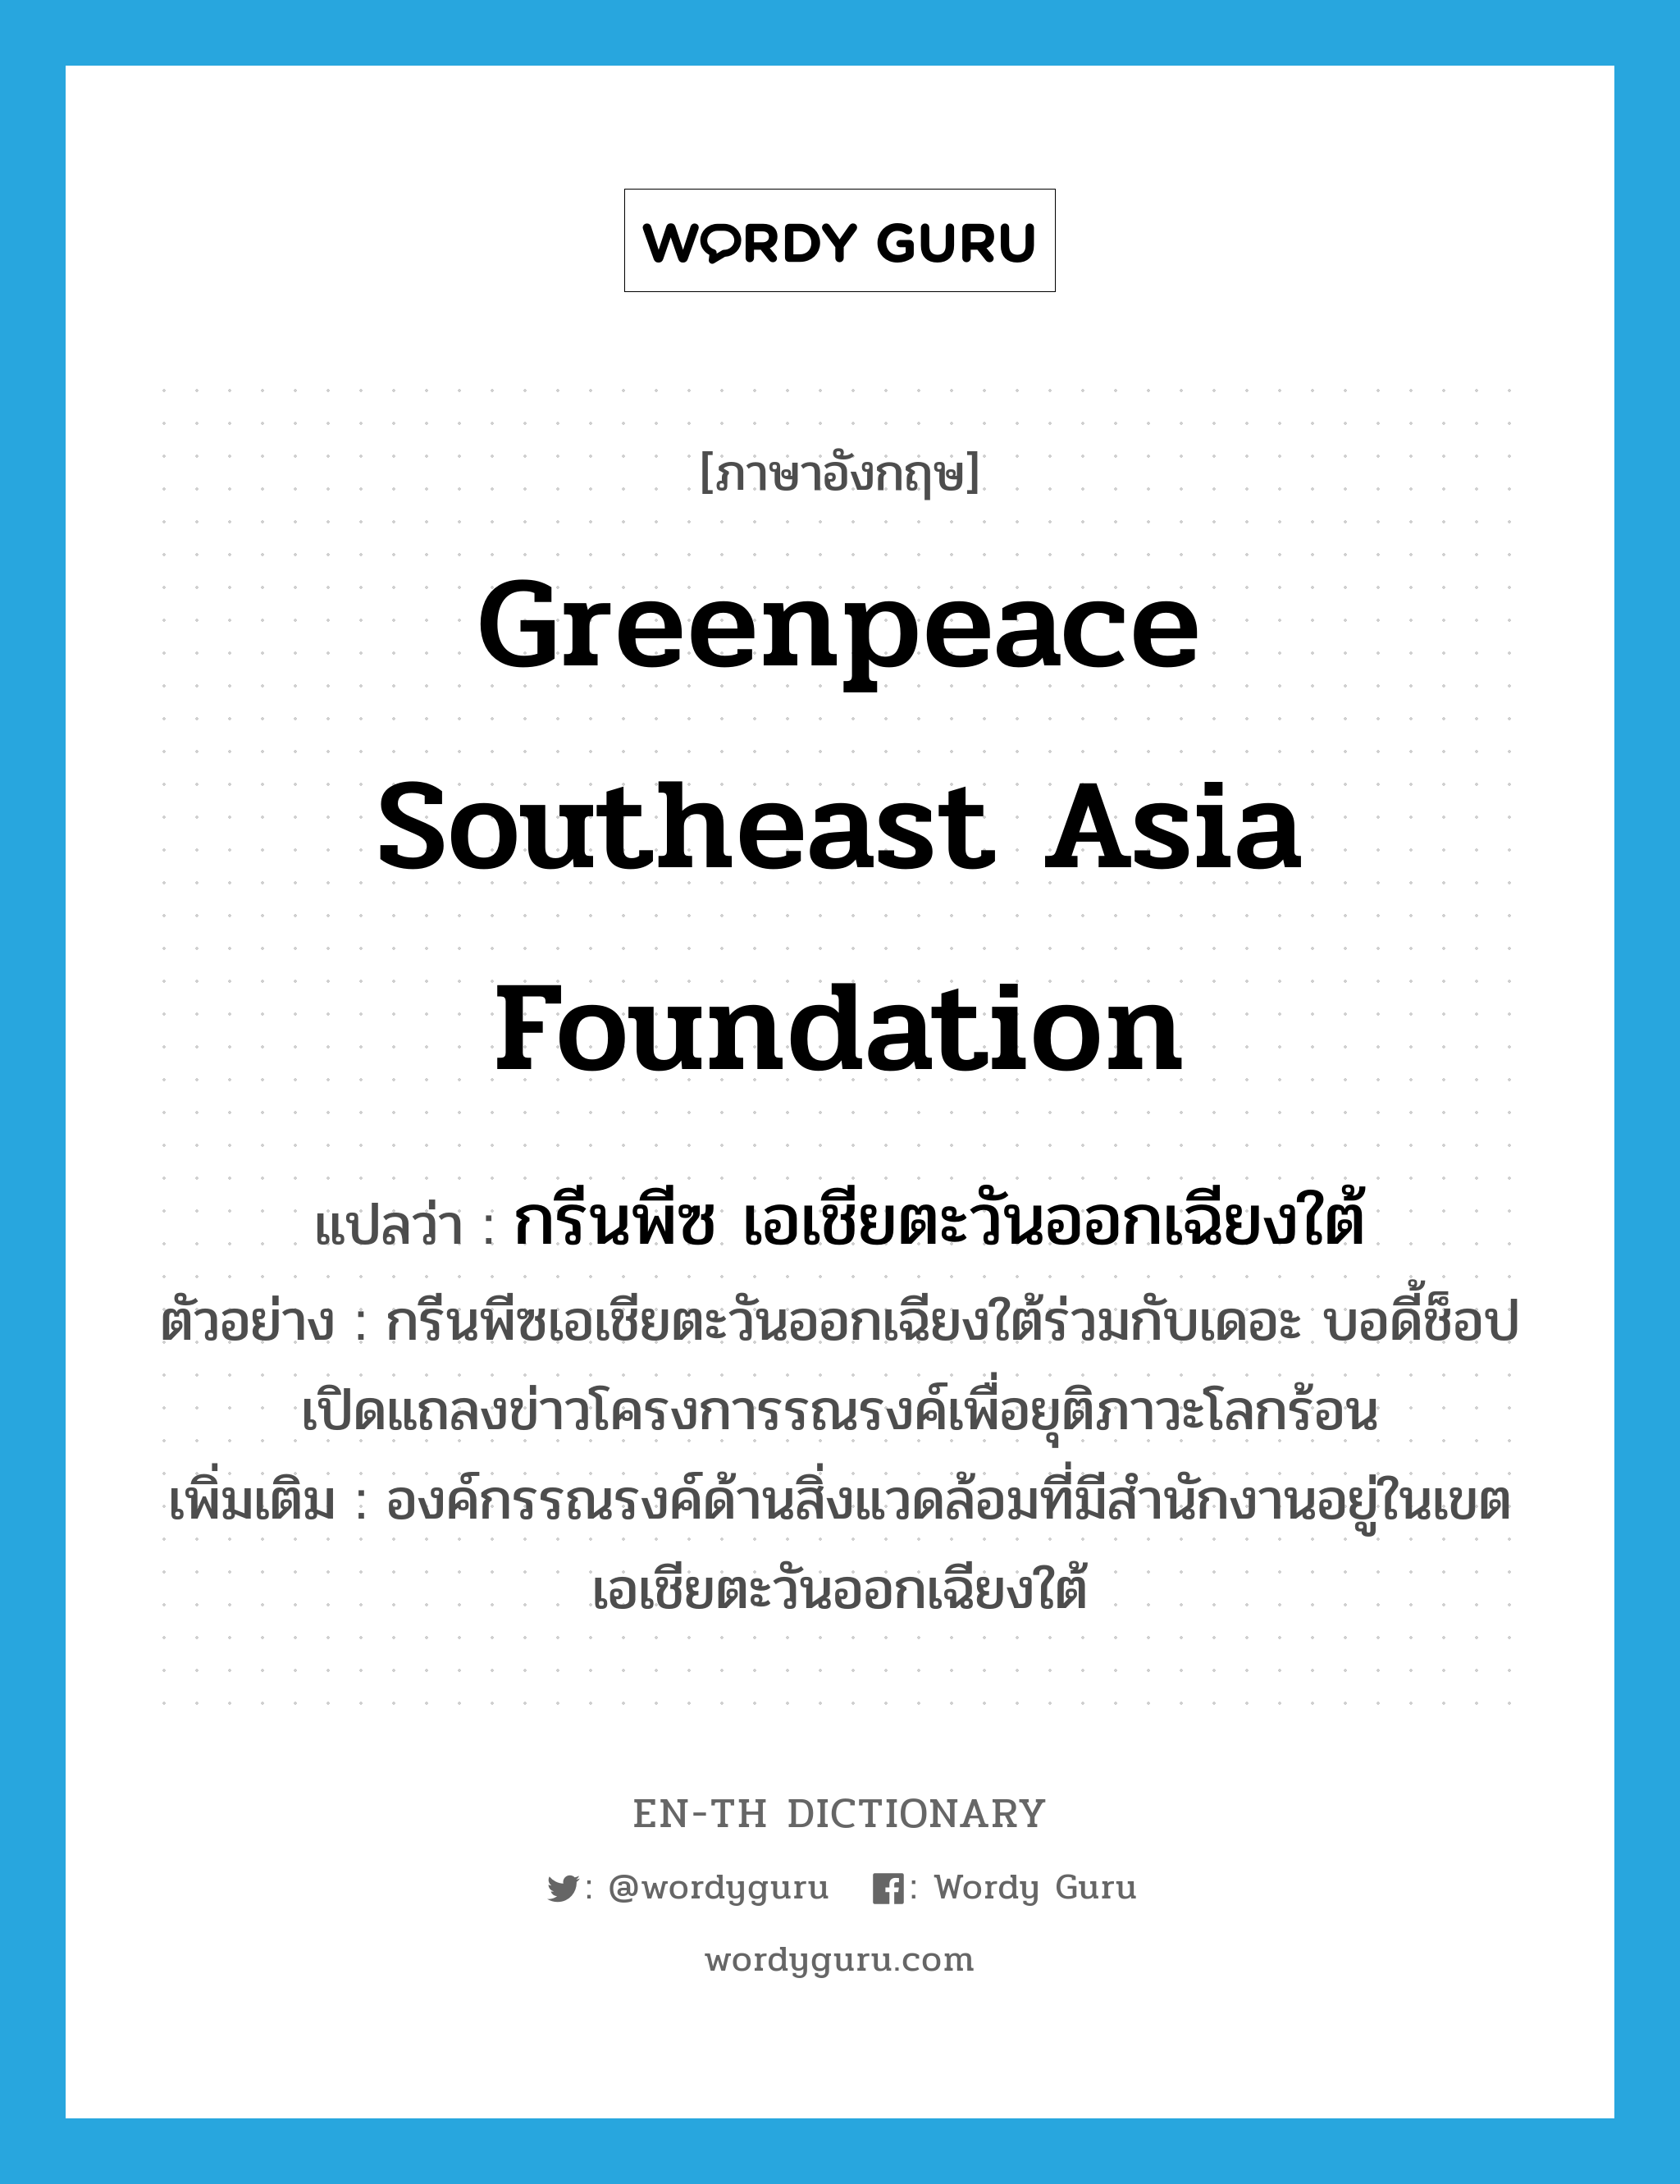 Greenpeace Southeast Asia Foundation แปลว่า?, คำศัพท์ภาษาอังกฤษ Greenpeace Southeast Asia Foundation แปลว่า กรีนพีซ เอเชียตะวันออกเฉียงใต้ ประเภท N ตัวอย่าง กรีนพีซเอเชียตะวันออกเฉียงใต้ร่วมกับเดอะ บอดี้ช็อปเปิดแถลงข่าวโครงการรณรงค์เพื่อยุติภาวะโลกร้อน เพิ่มเติม องค์กรรณรงค์ด้านสิ่งแวดล้อมที่มีสำนักงานอยู่ในเขตเอเชียตะวันออกเฉียงใต้ หมวด N